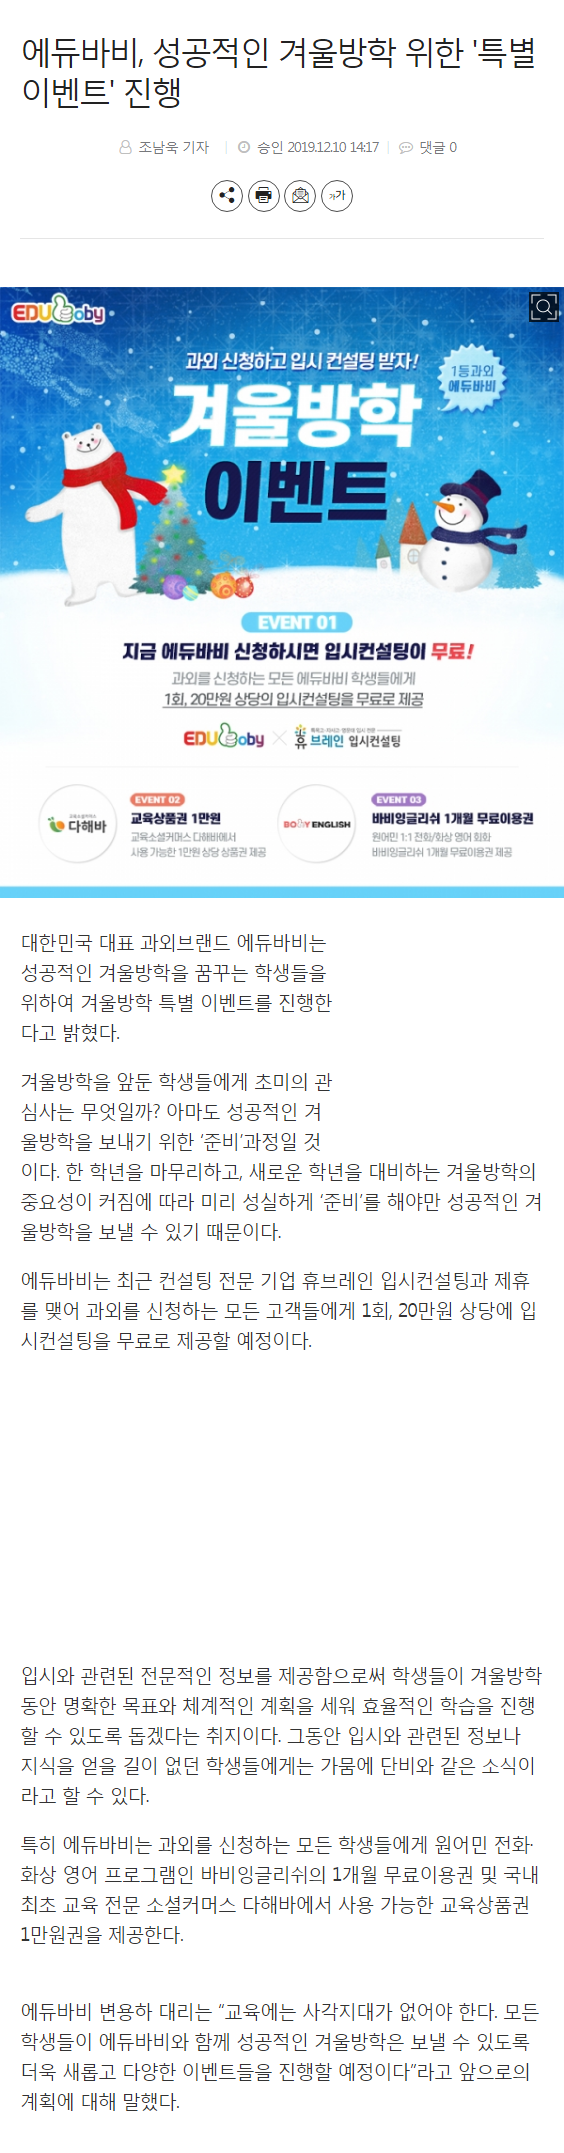 바비잉글리쉬_뉴스기사_성공적인겨울방학위한특별이벤트.png